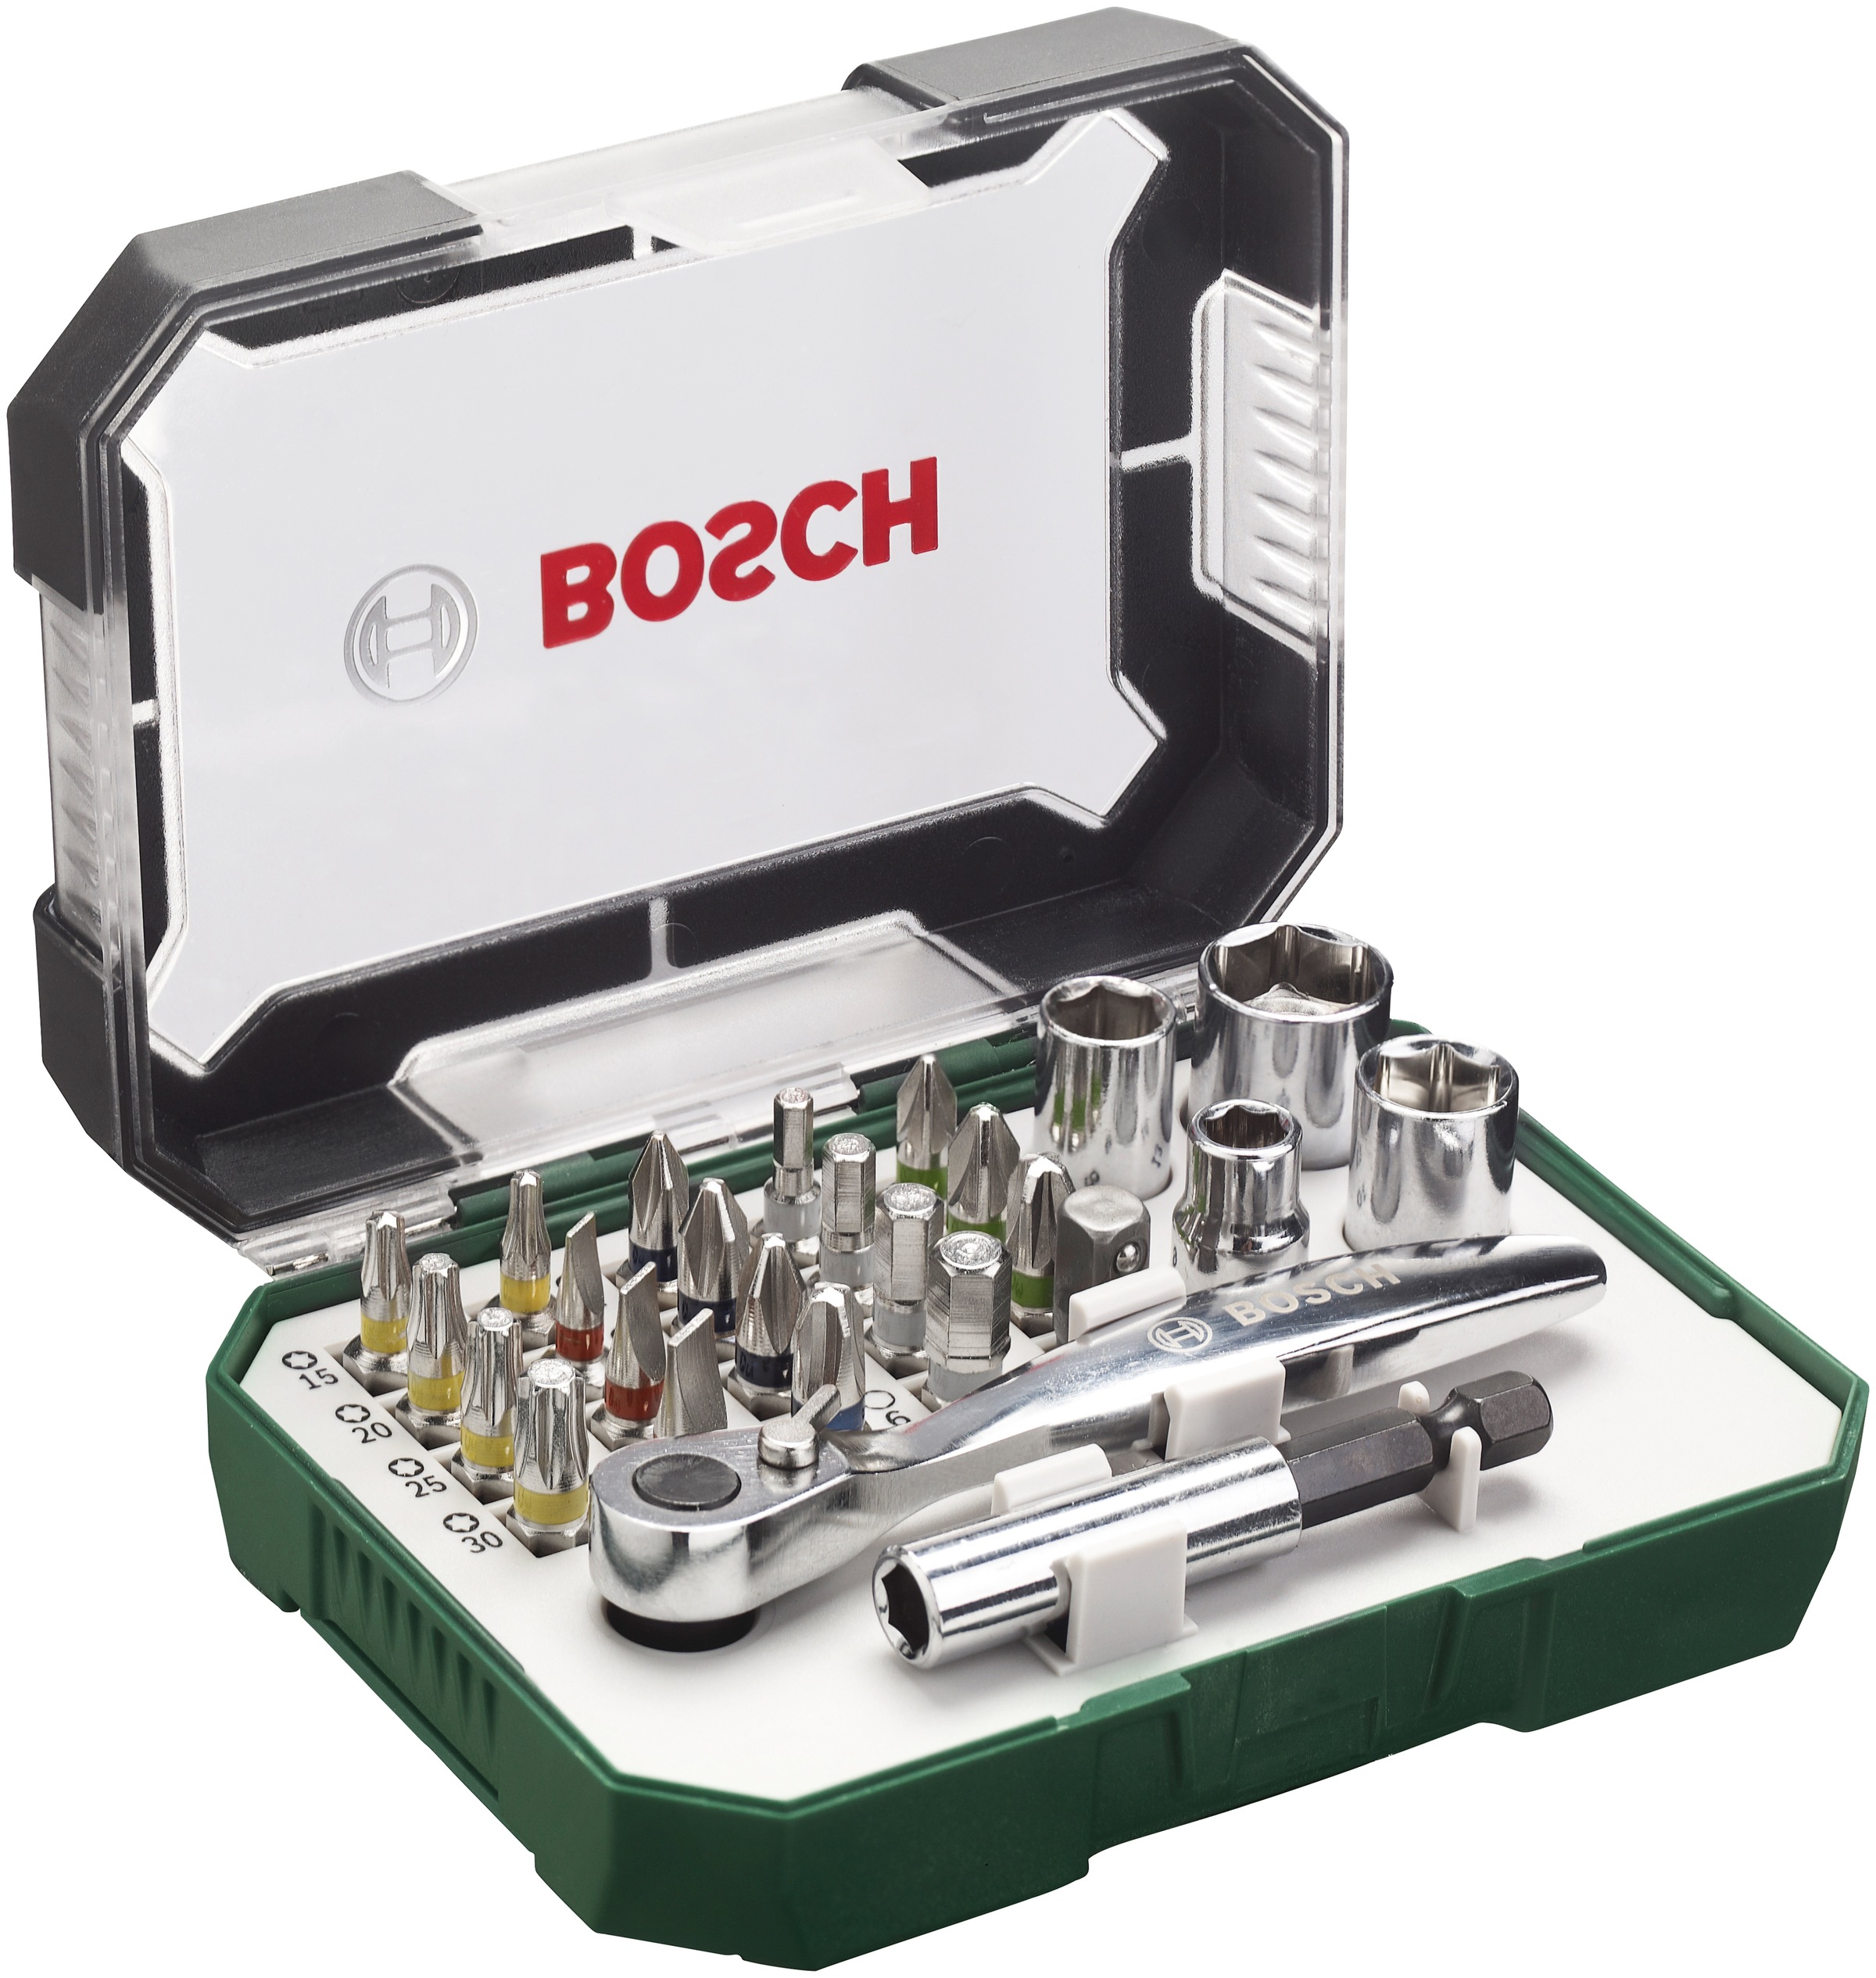 Bosch Home & Garden Bit-Set »double end«, 27-teilig, SDB-Set,  Schrauberbit-Set, mit zusätzlicher Ratsche online kaufen